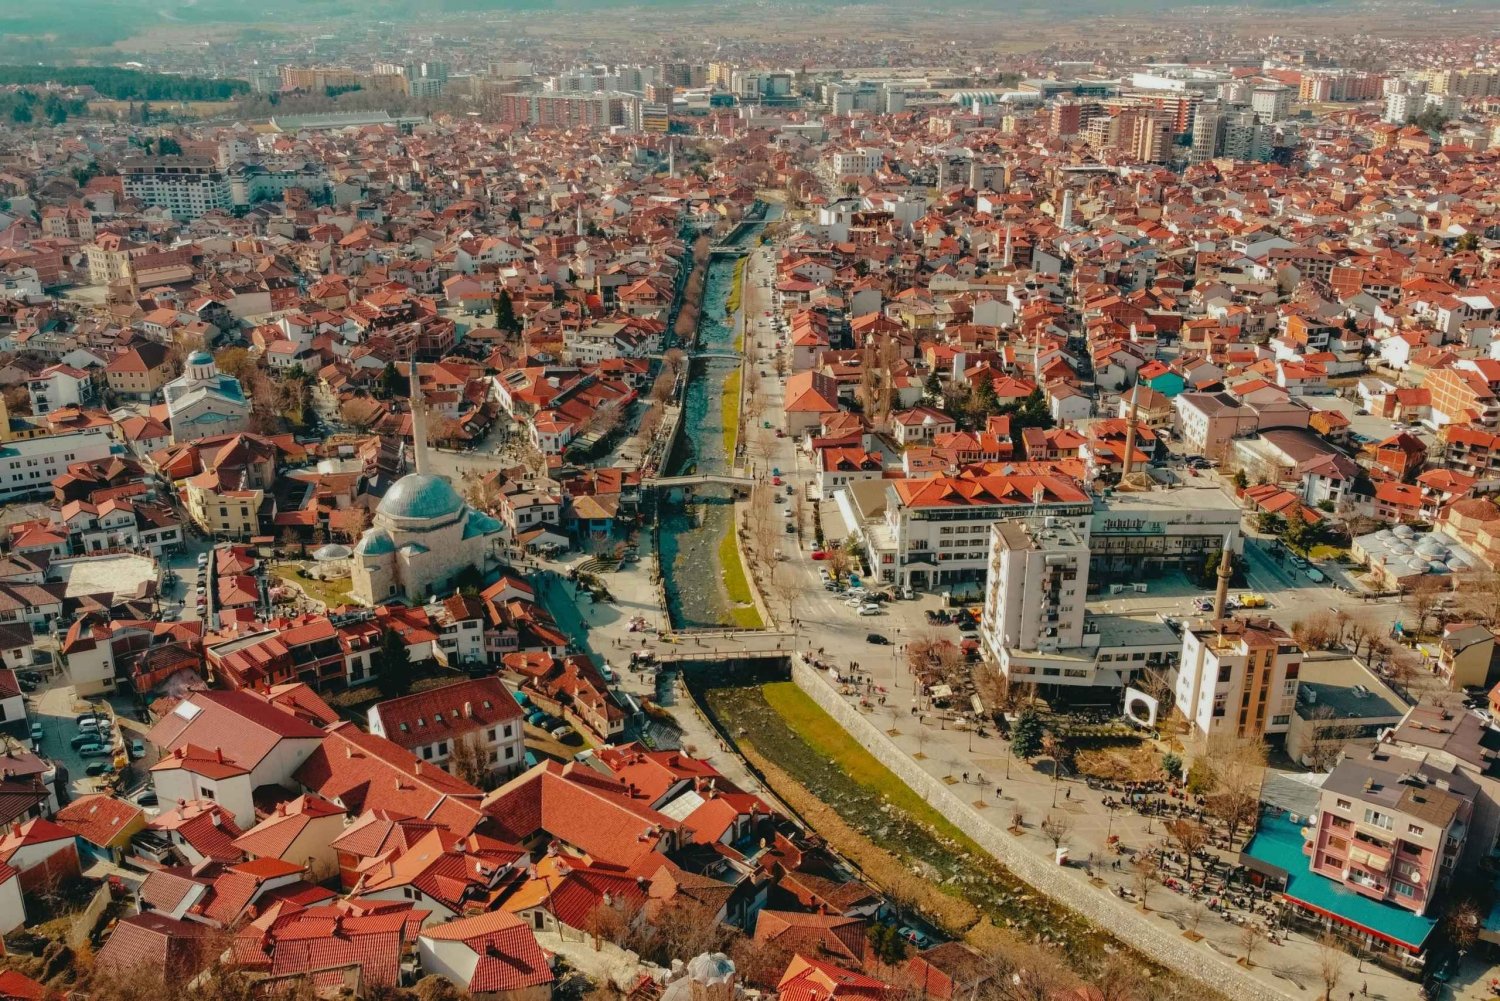 Prishtina e Prizren - Kosovo, tour di un giorno